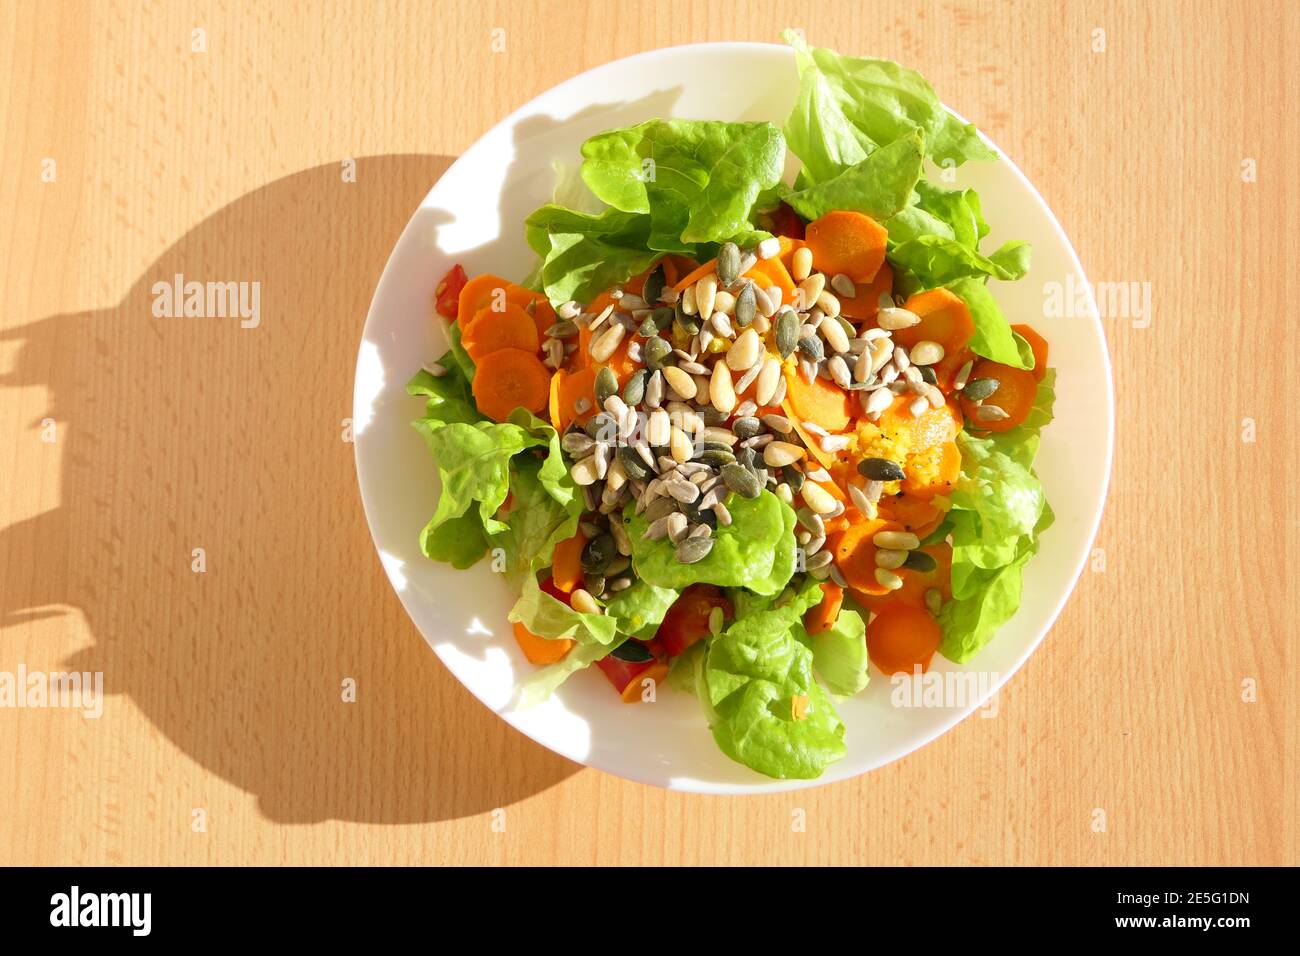 Insalata mista sana ricca di vitamine e a basso contenuto di calorie con carote, pinoli e semi di zucca Foto Stock